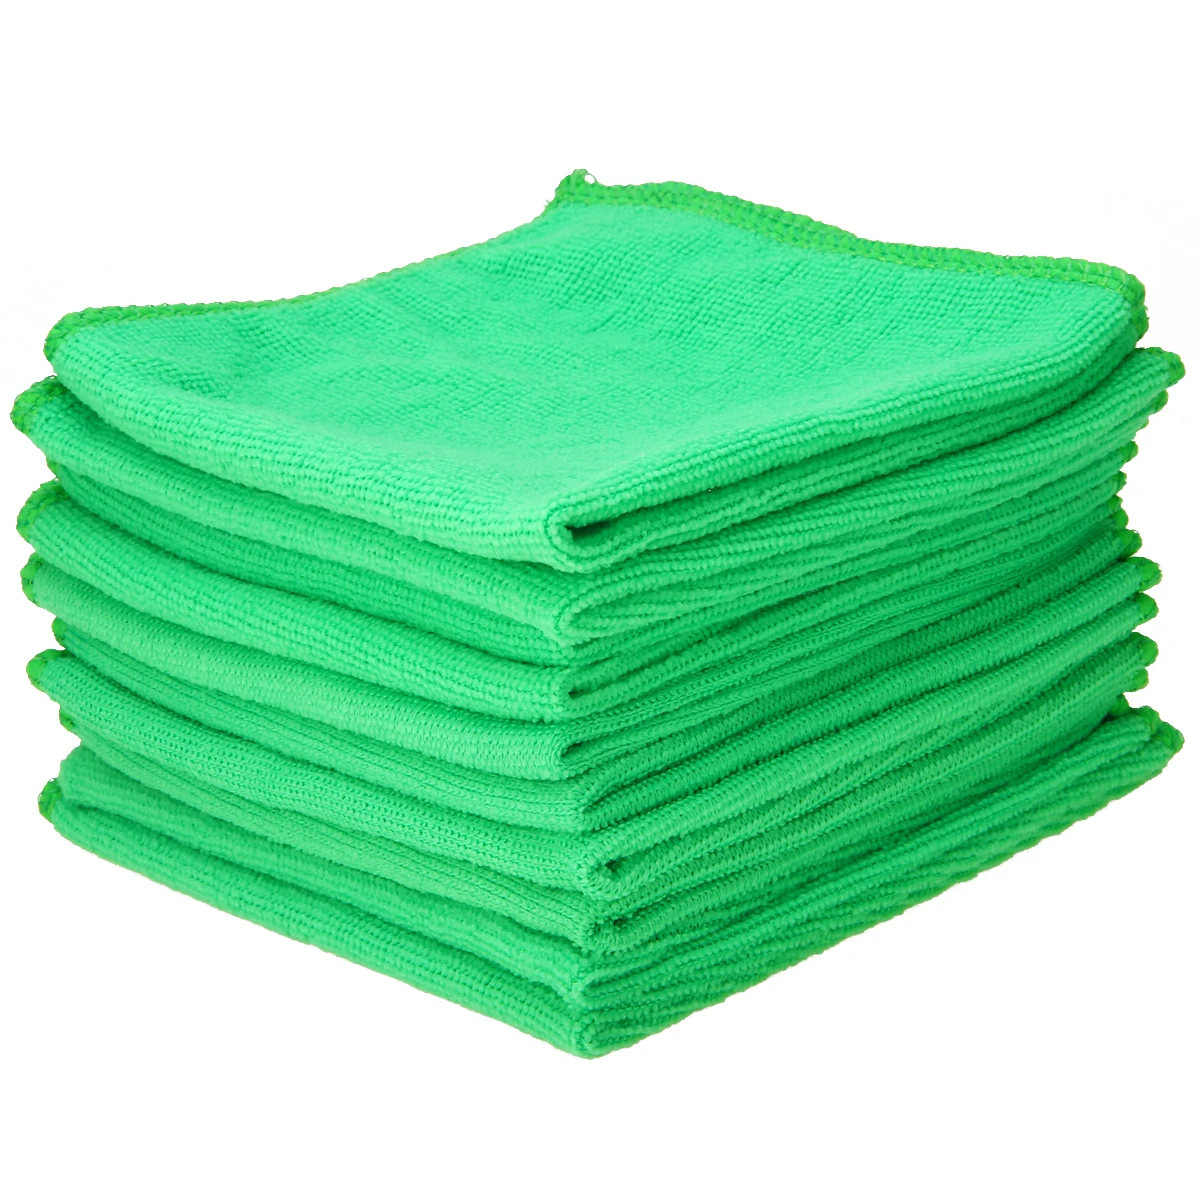 Mayitr 1 компл. 10X зеленый микрофибра для чистки Авто Детализация мягкие салфетки из микрофибры моющее полотенце тряпка домашняя чистая 25*25 см